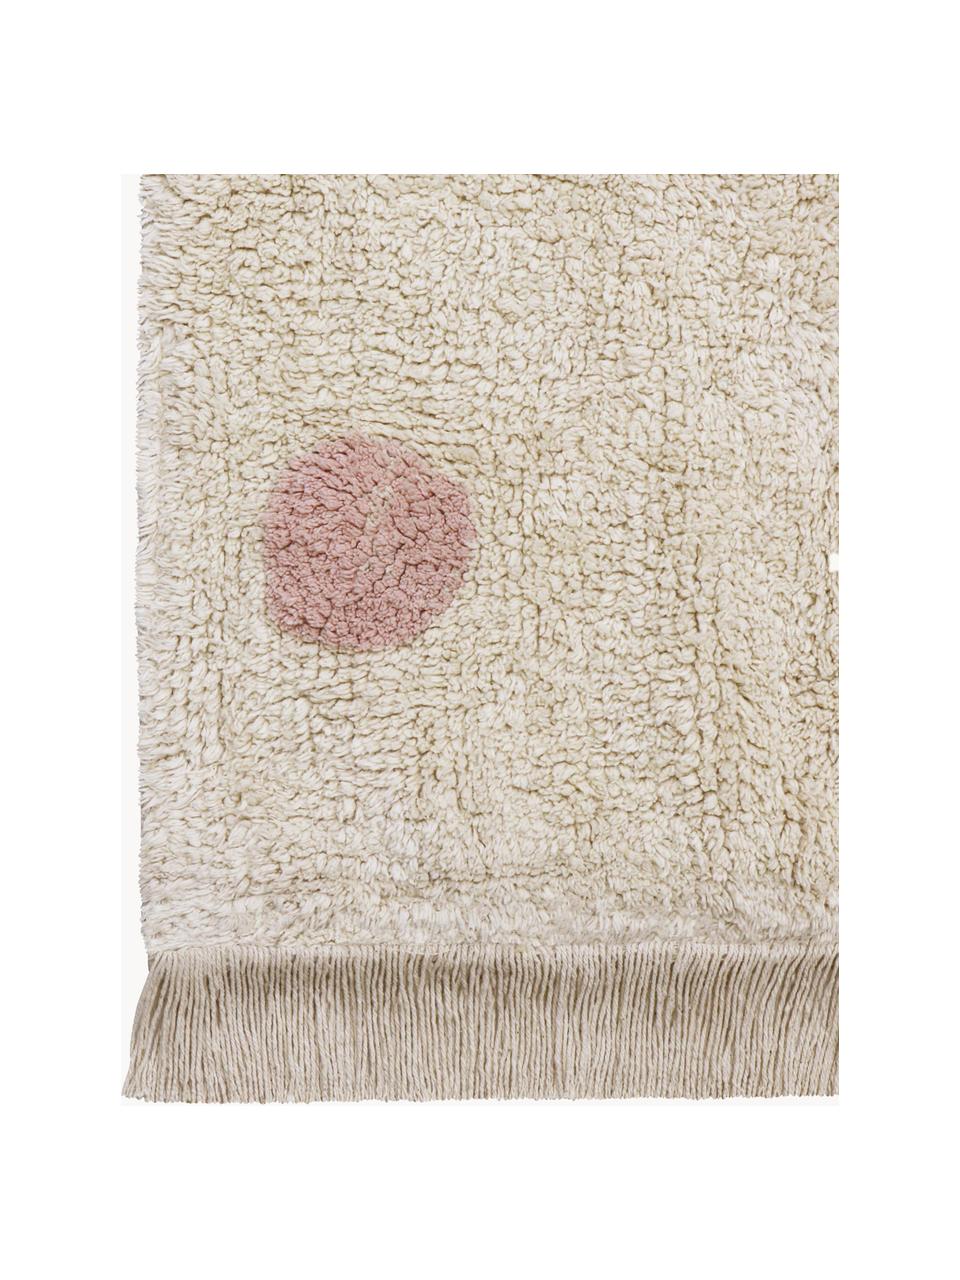 Tappeto per bambini fatto a mano Hippy Dots, lavabile, Retro: 100% cotone, Beige chiaro, rosa cipria, Larg. 120 x Lung. 160 cm (taglia S)